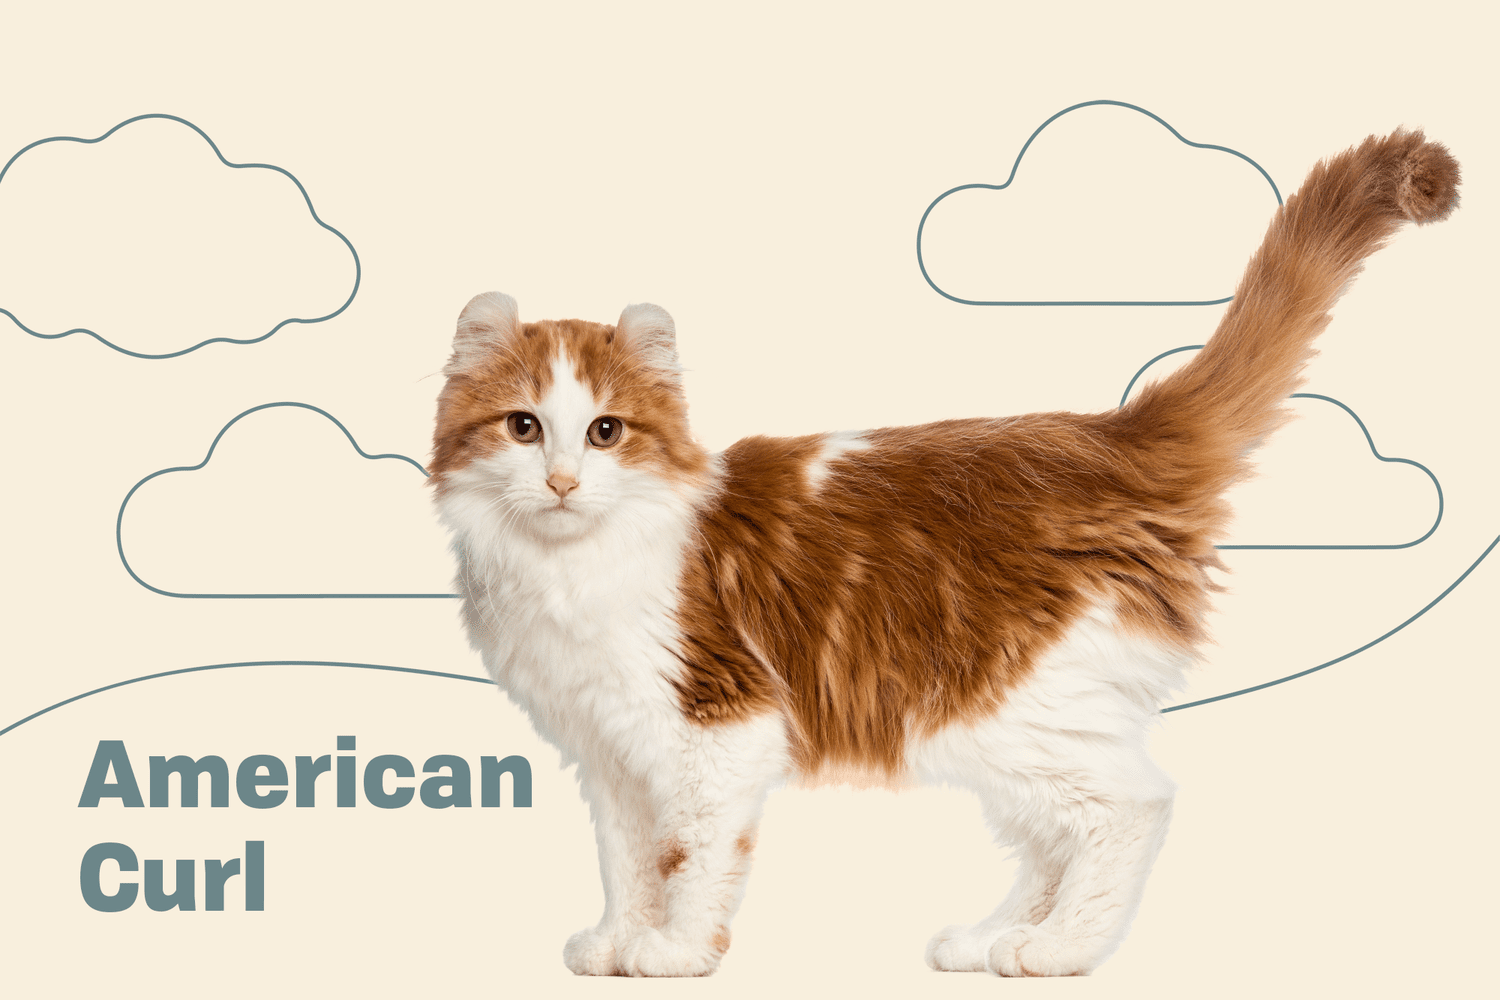 American curl cat